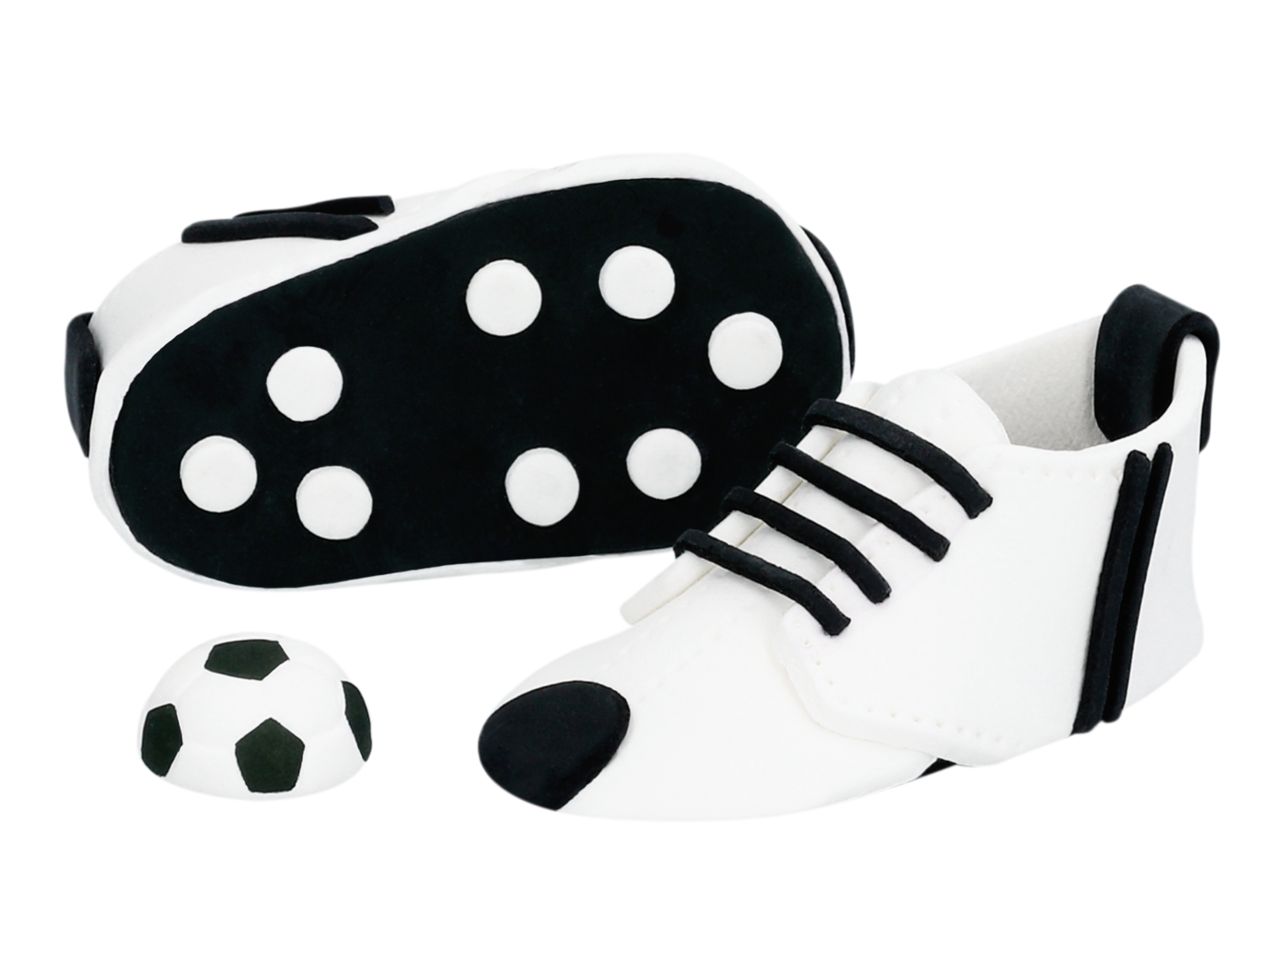 3D-Zuckerfigur Fußballschuhe, Schwarz & Weiß, 3-teilig, Schuhe: 8 x 4,5 x 3,5 cm, Fußball: ca. 2,4 cm